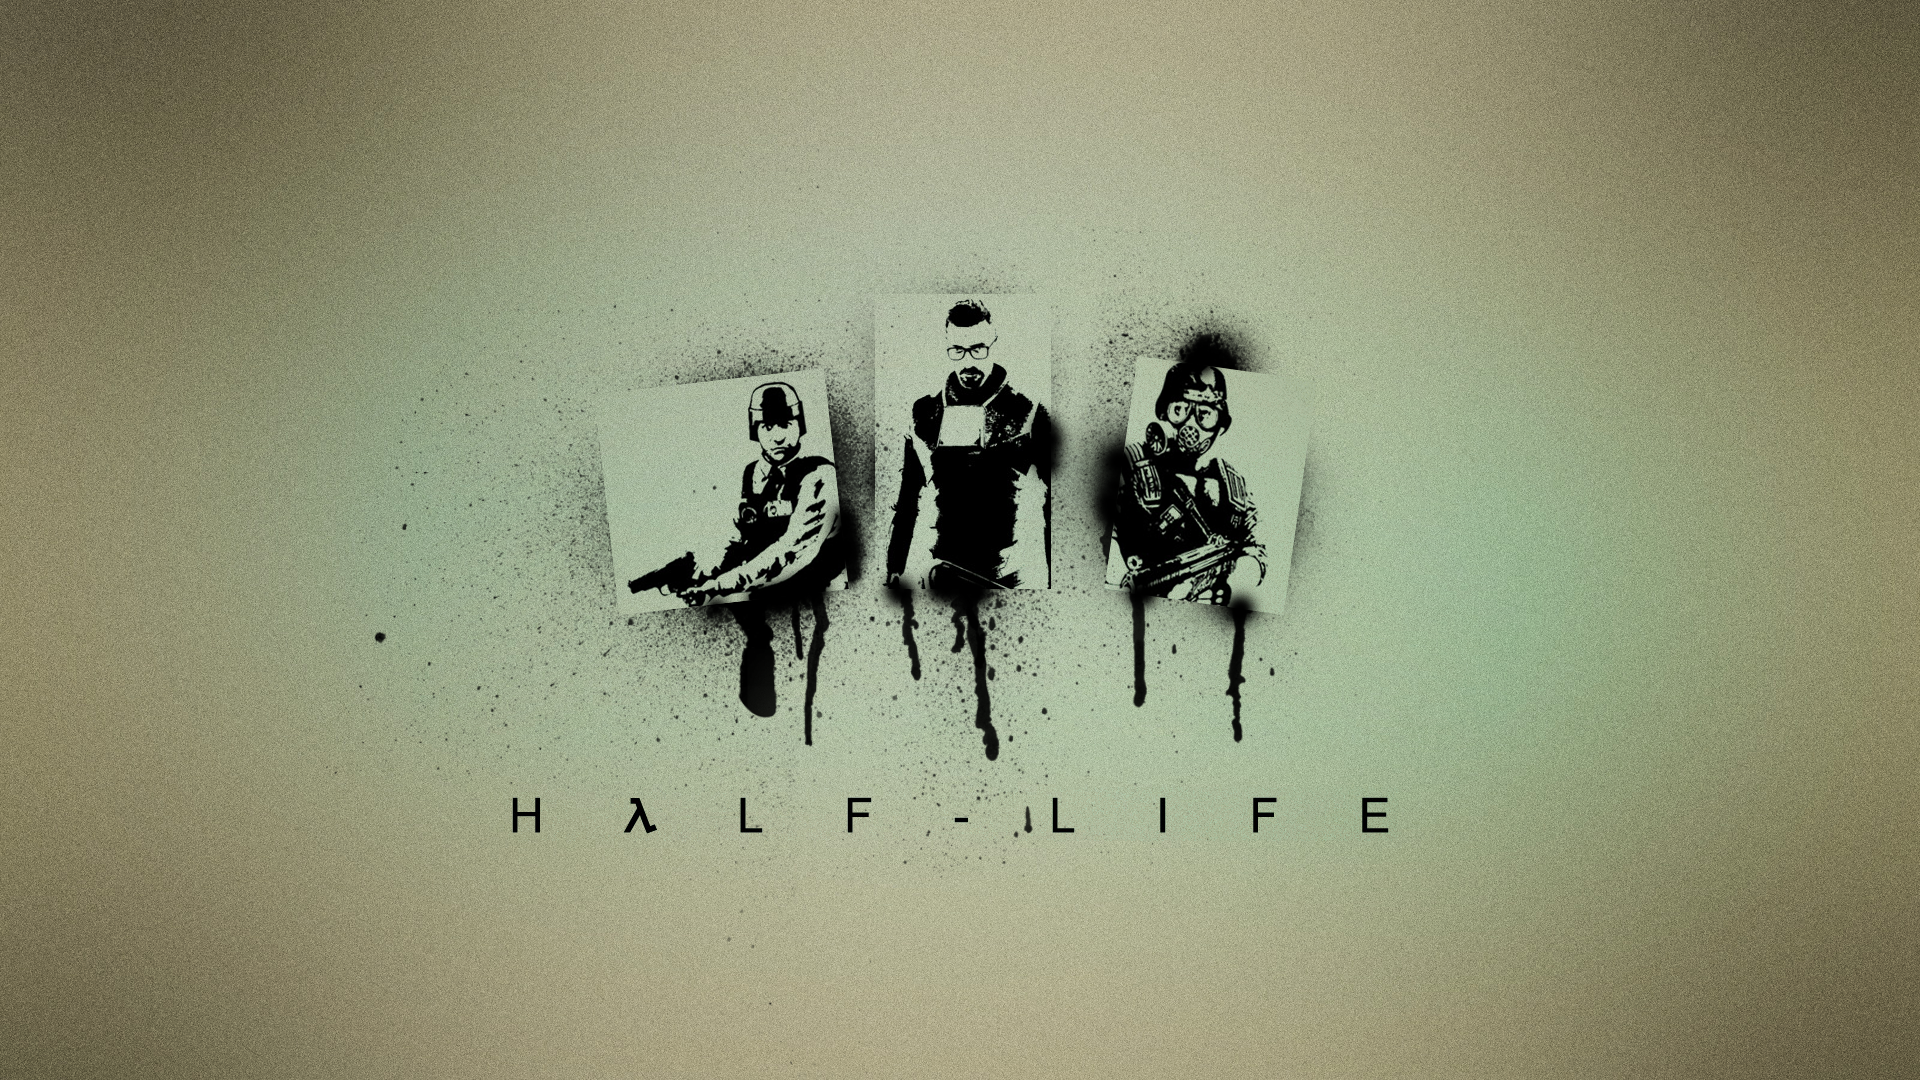 Half life wallpaper